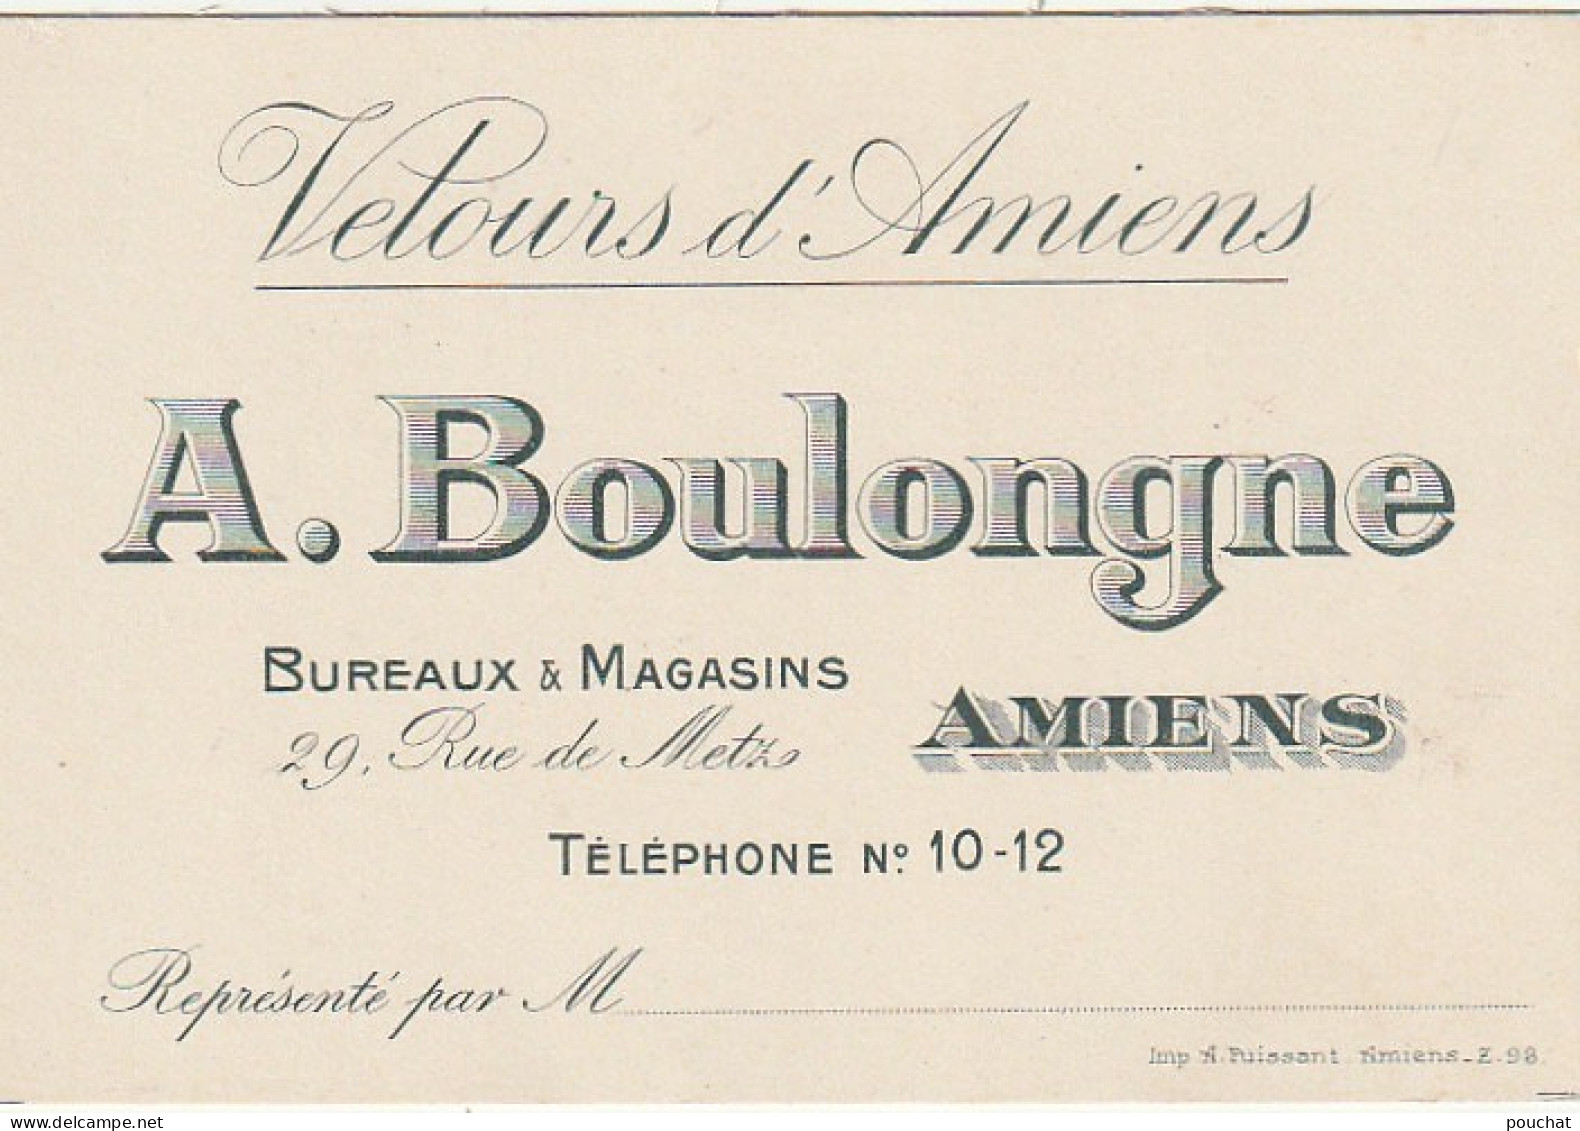 KO 6- (80) " VELOURS D' AMIENS " - A . BOULONGNE - BUREAUX & MAGASINS , RUE DE METZ , AMIENS- CARTE DE VISITE - 2 SCANS - Visitekaartjes